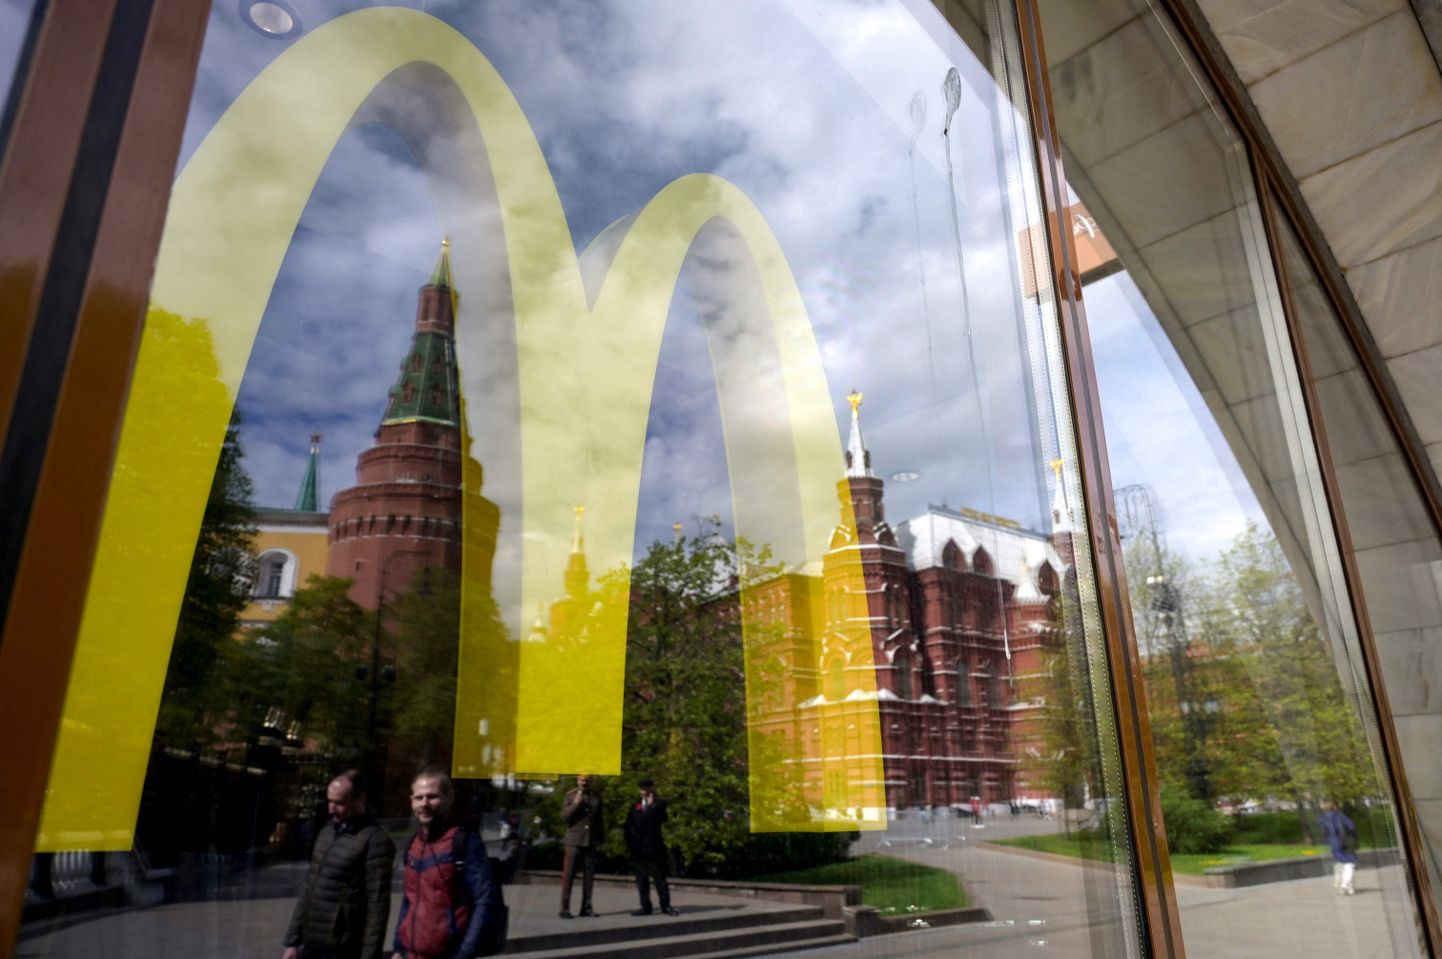 Suletud McDonald'si söögikoha akendest peegelduvad Kremli tornid  2022. aasta 16.mail. Sel päeval teatas USA kiirtoiduhiid, et lahkub Ukraina ründamise tõttu Venemaalt.